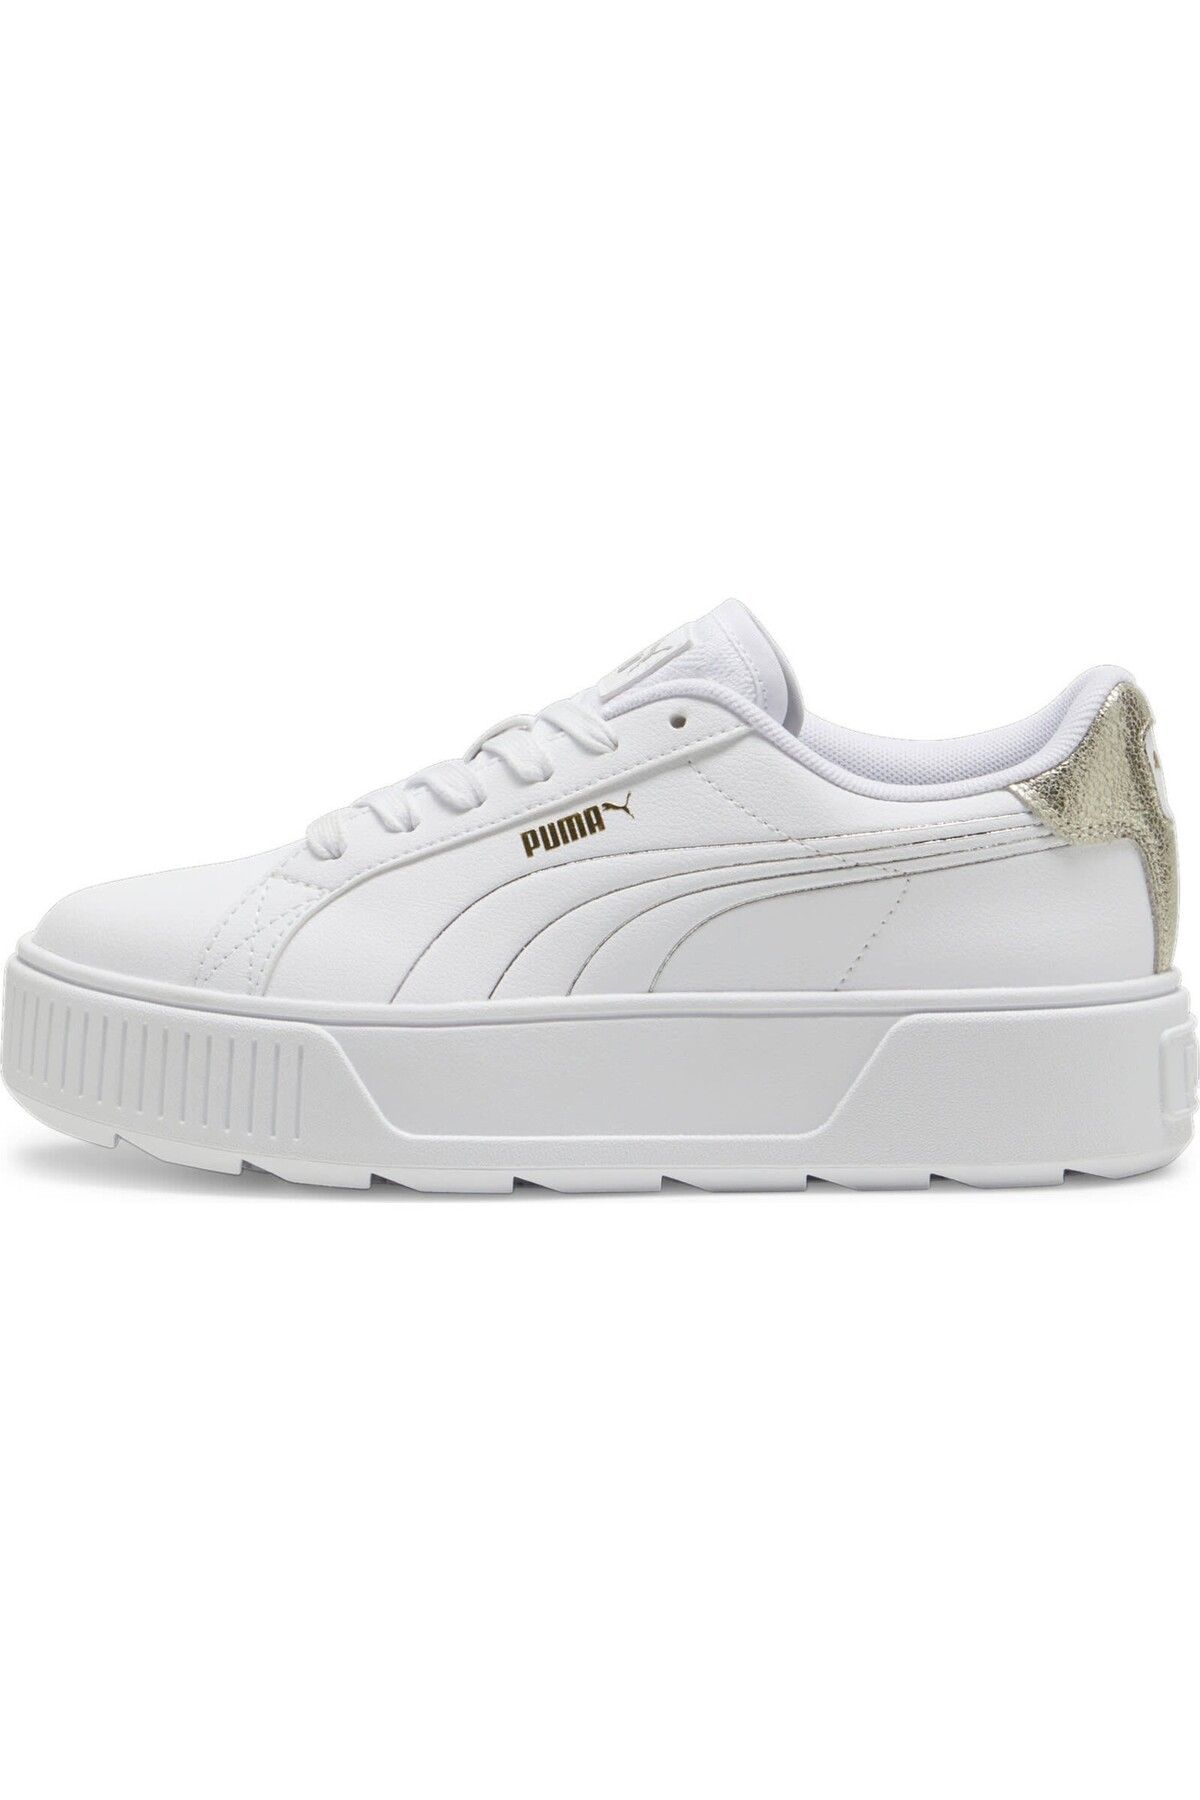 Puma PumaKarmen Metallic Shine Günlük Spor Ayakkabı 39509901-Beyaz-Altın